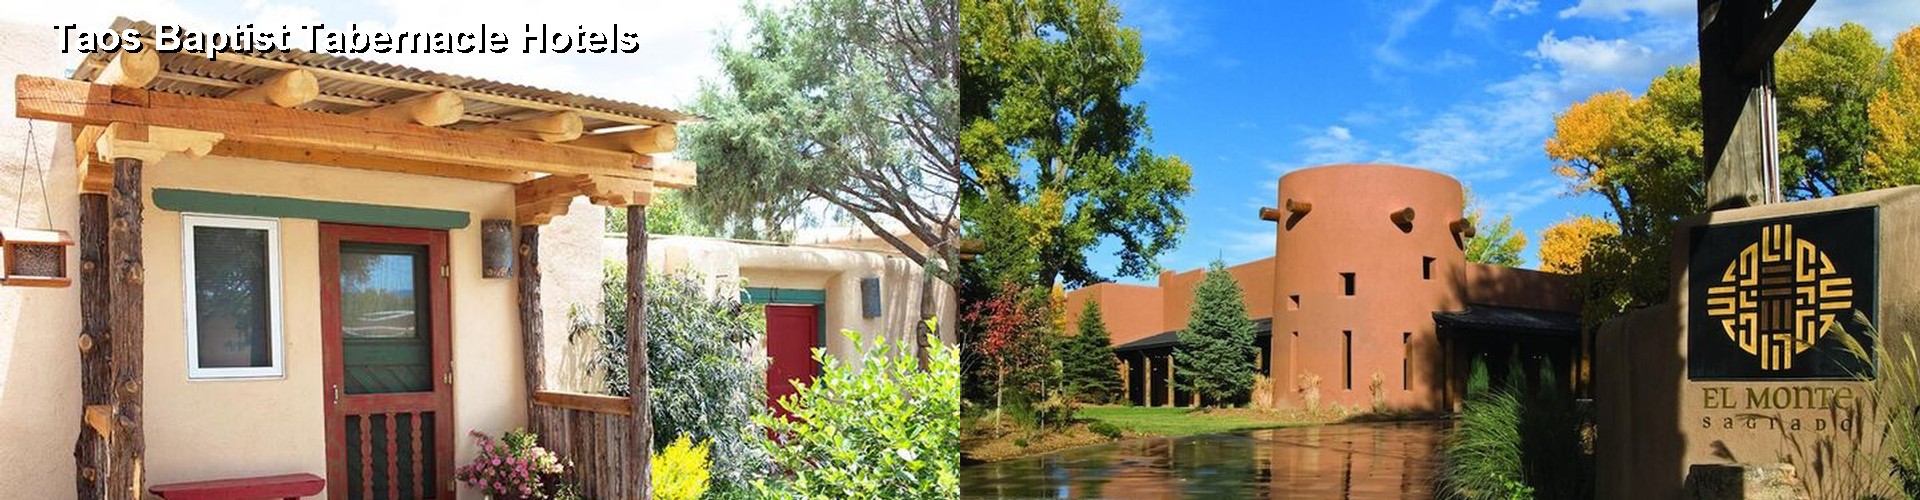 4 Best Hotels near Taos Baptist Tabernacle